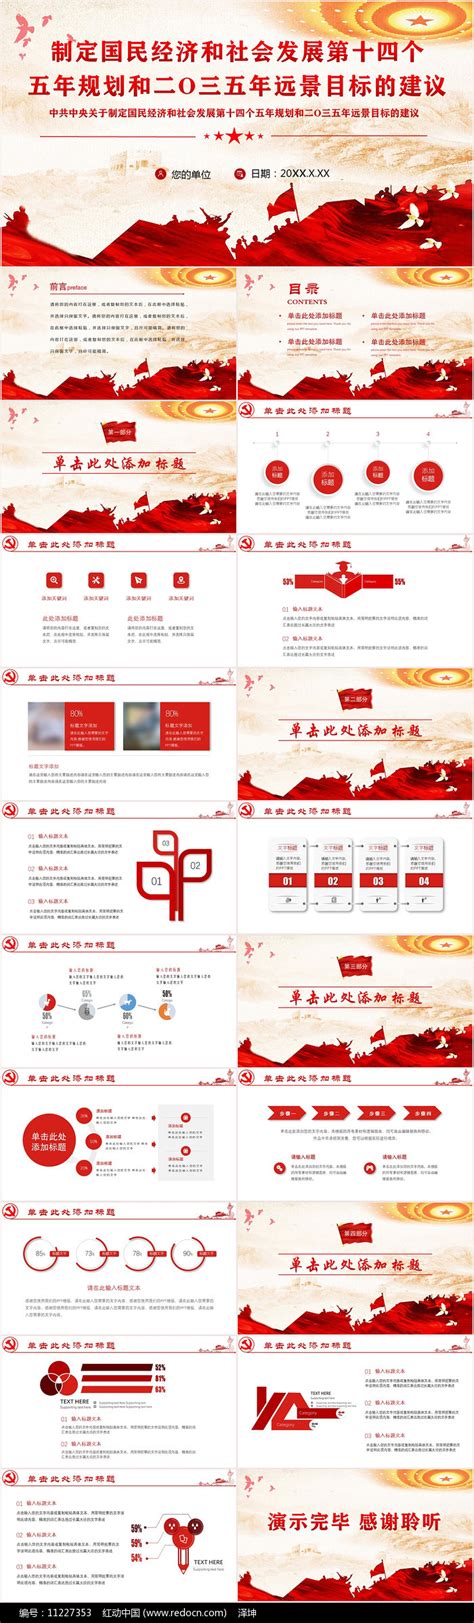 十四五规划和2035年远景目标建议PPT下载_红动中国